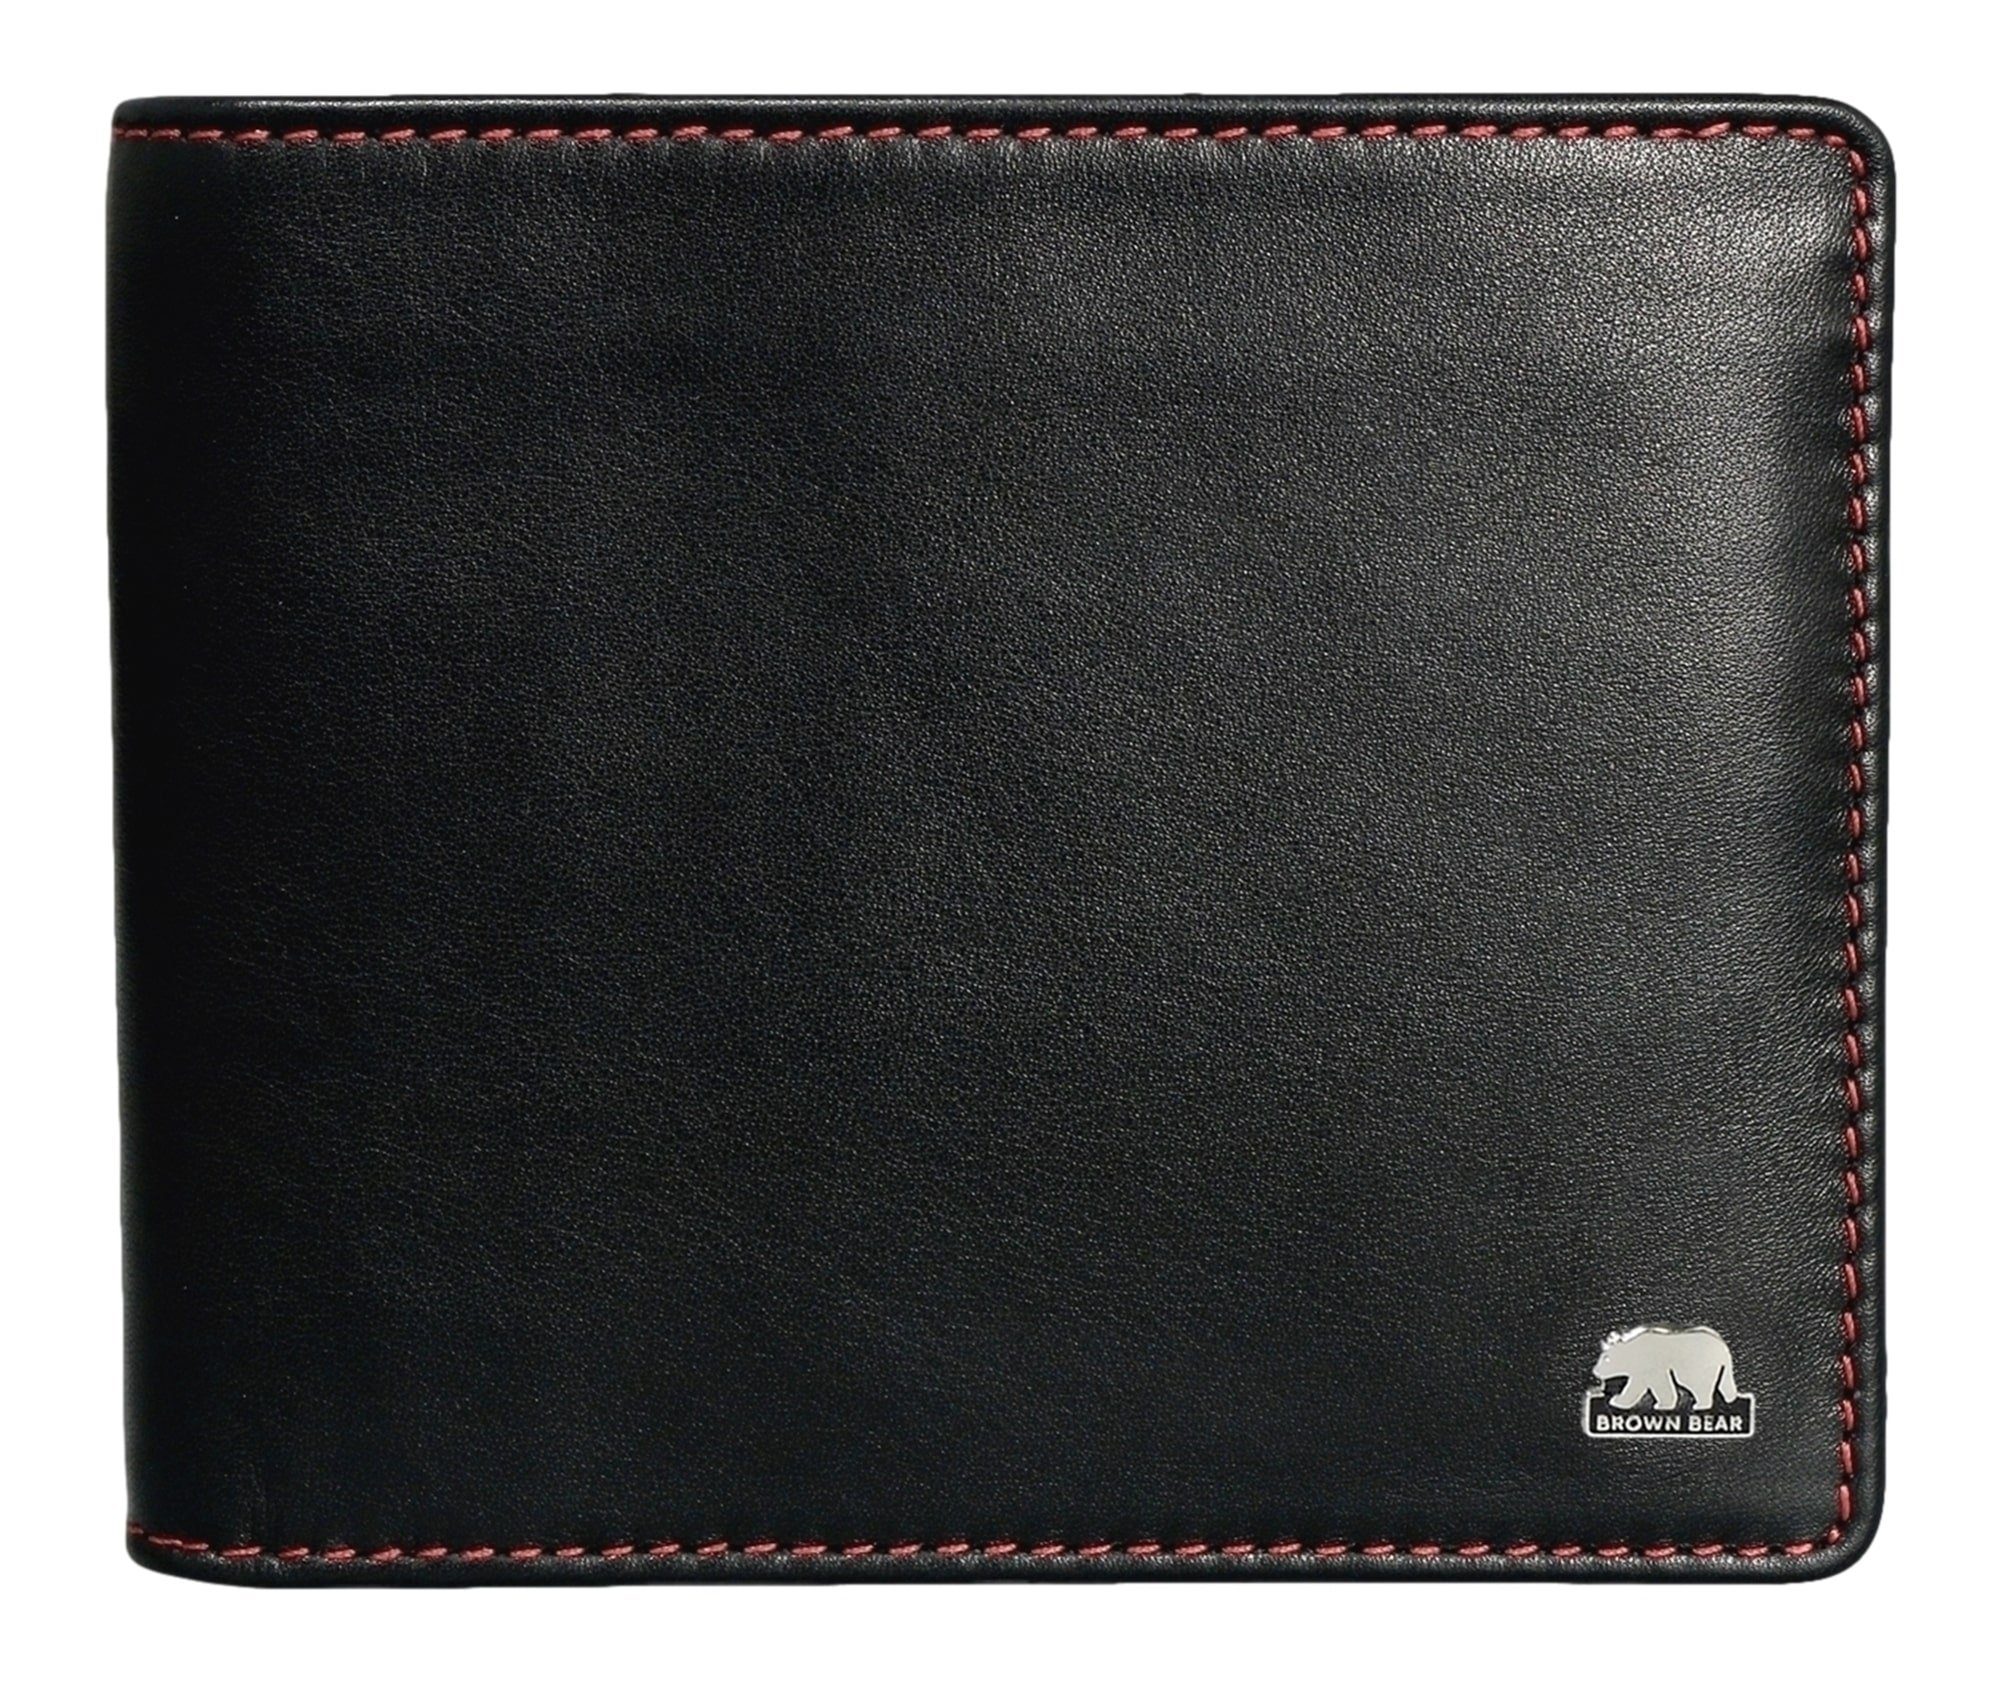 Brown Bear Geldbörse Modell Polo 715 ohne Münzfach mit 6 Kartenfächern, für Herren aus Echtleder Farbe Schwarz & Rot Schwarz-Rot